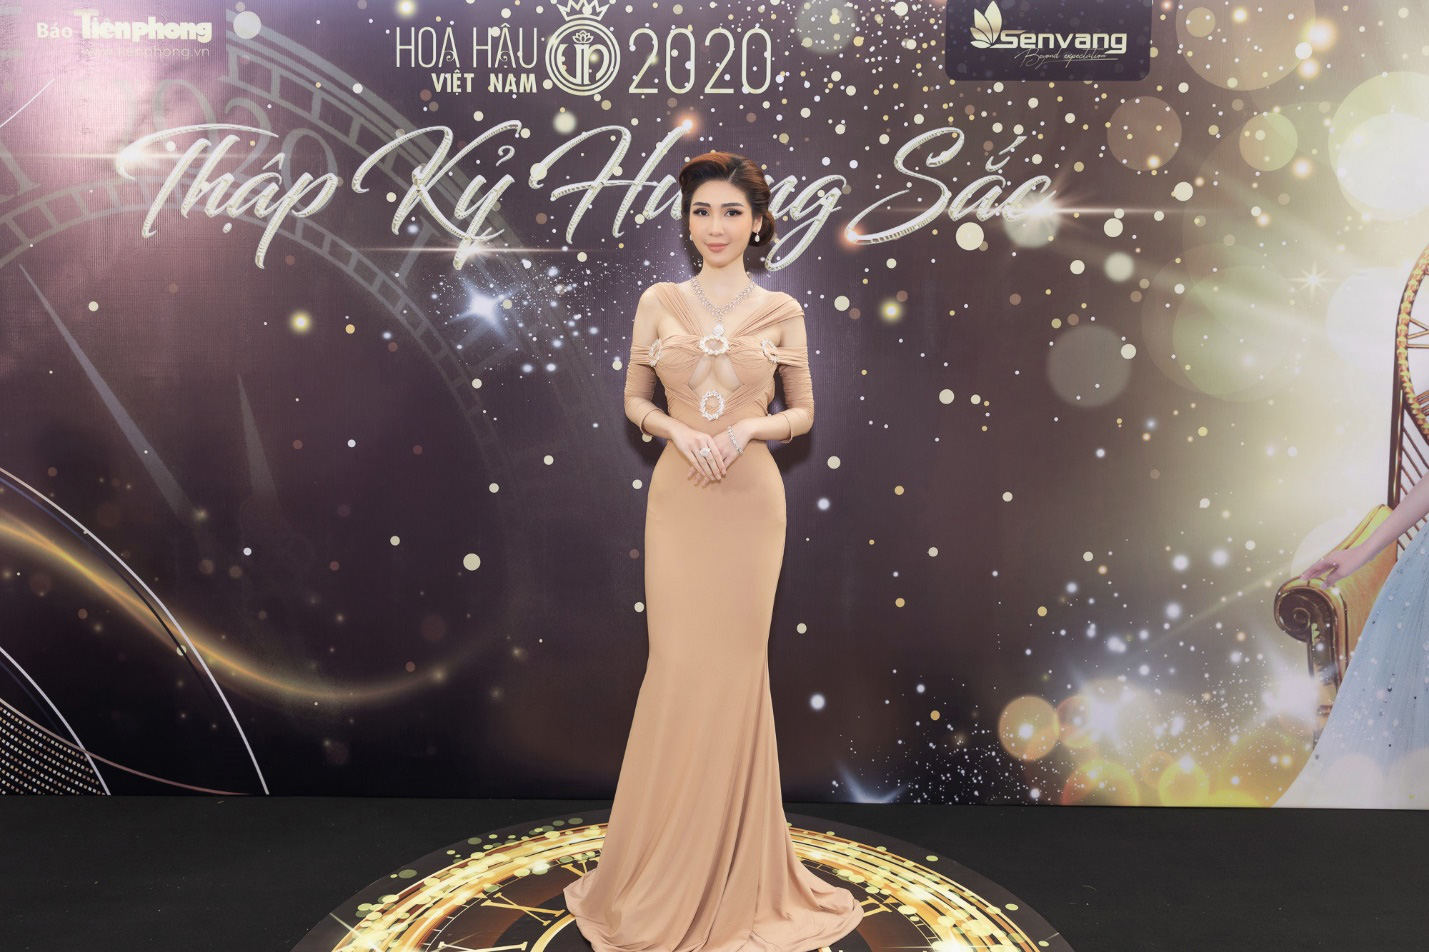 CEO Lâm Ngân diện đầm dạ hội, trang sức 20 tỷ tại họp báo chung kết Hoa hậu Việt Nam 2020 - Ảnh 1.